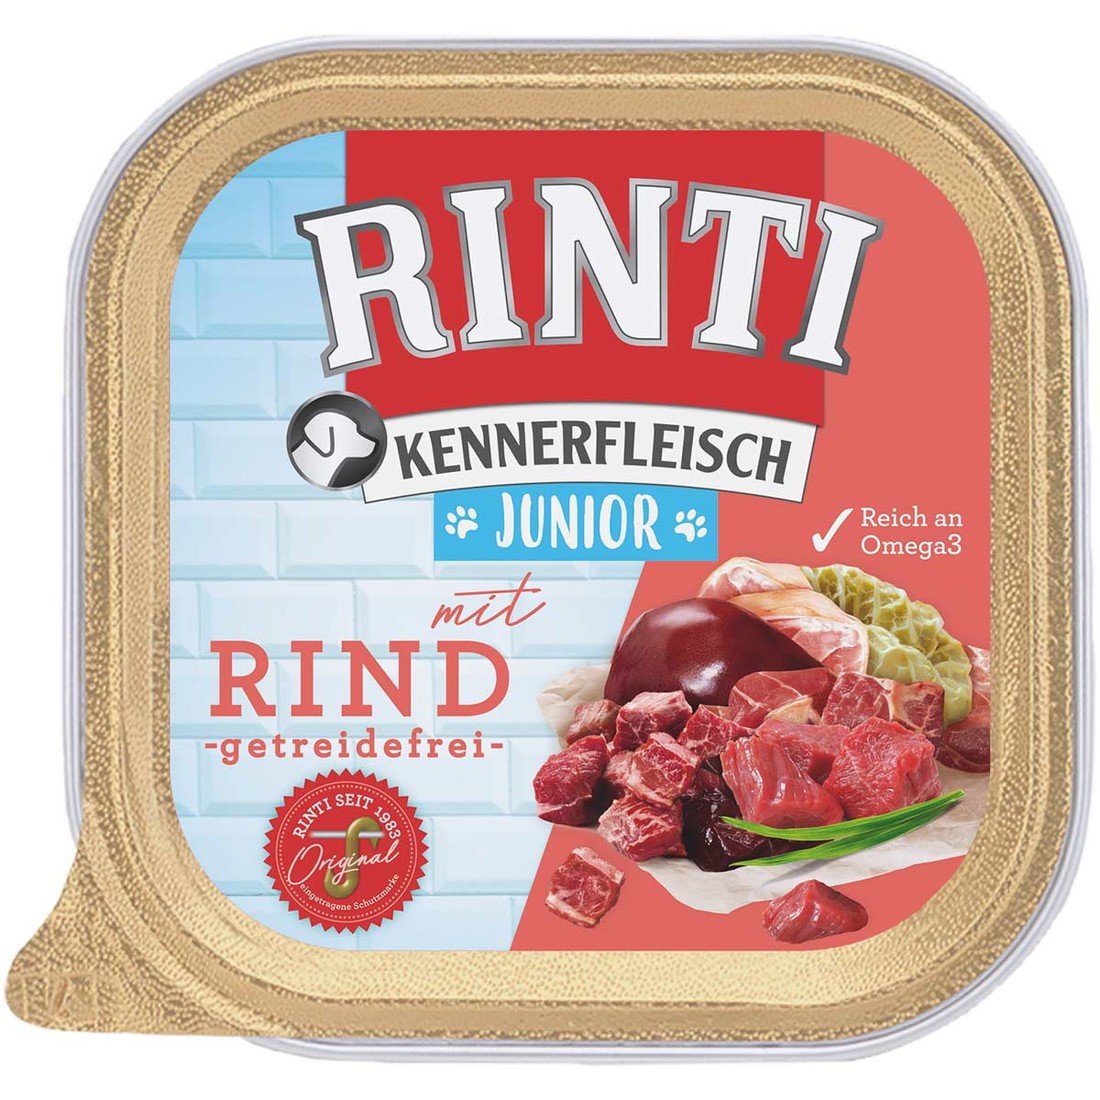 RINTI Kennerfleisch Junior 9 x 300 g - hovězí